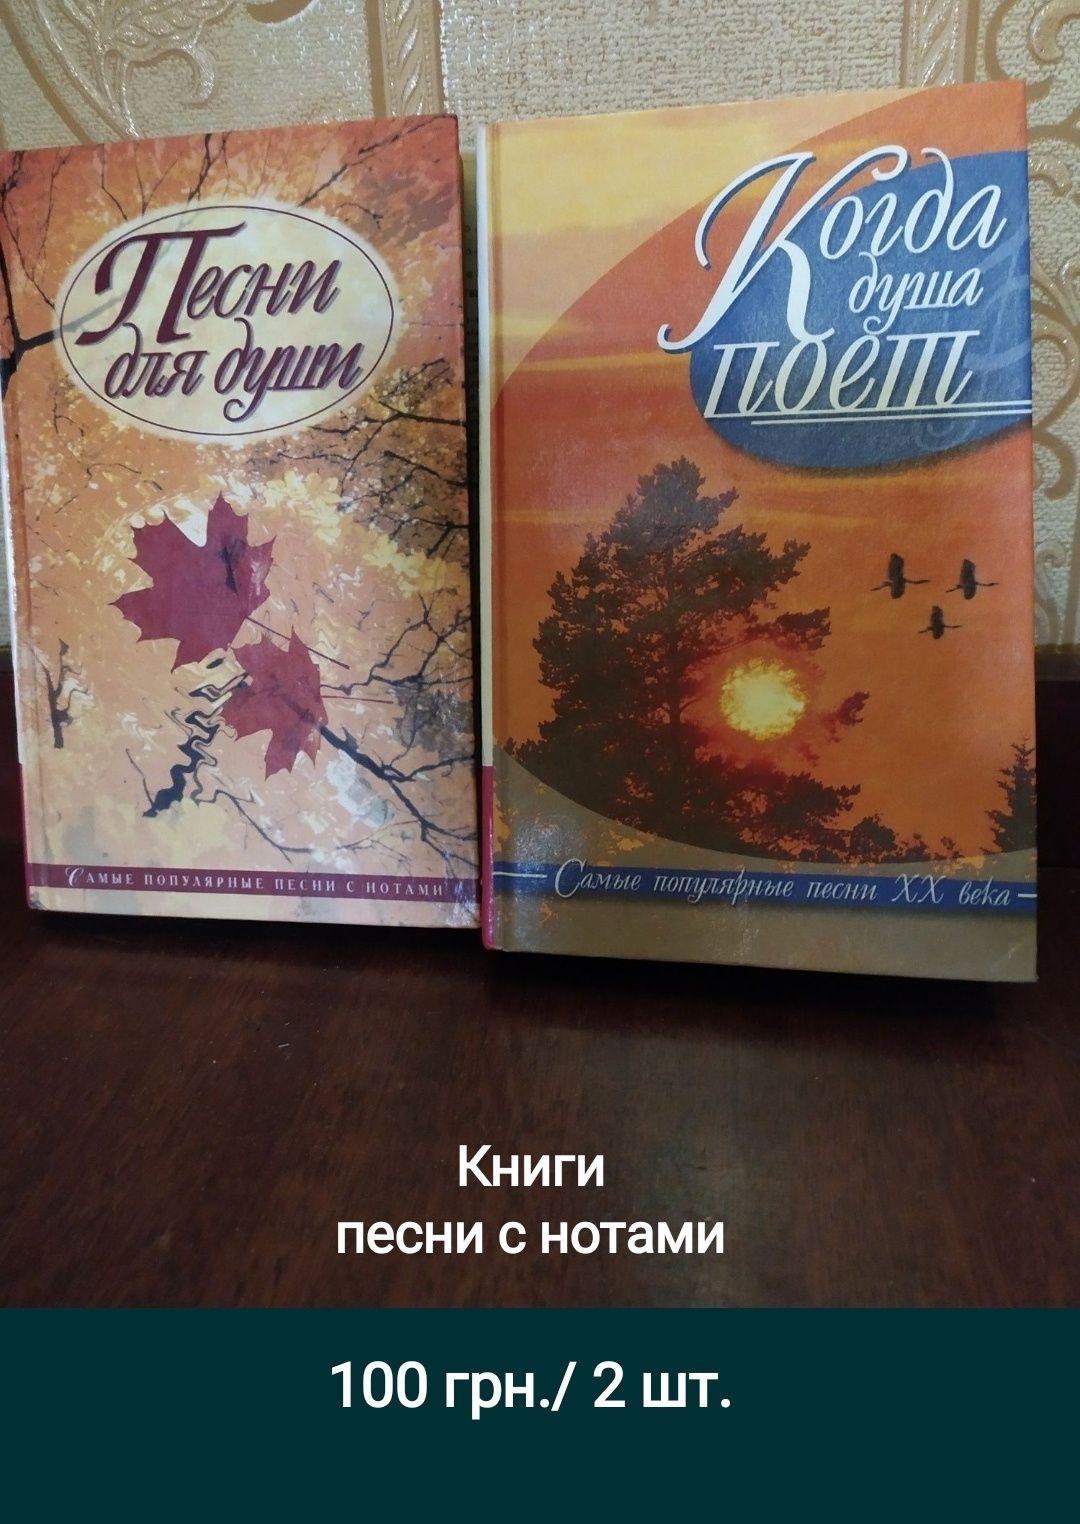 Книга 1962 г. Казахские сказки.